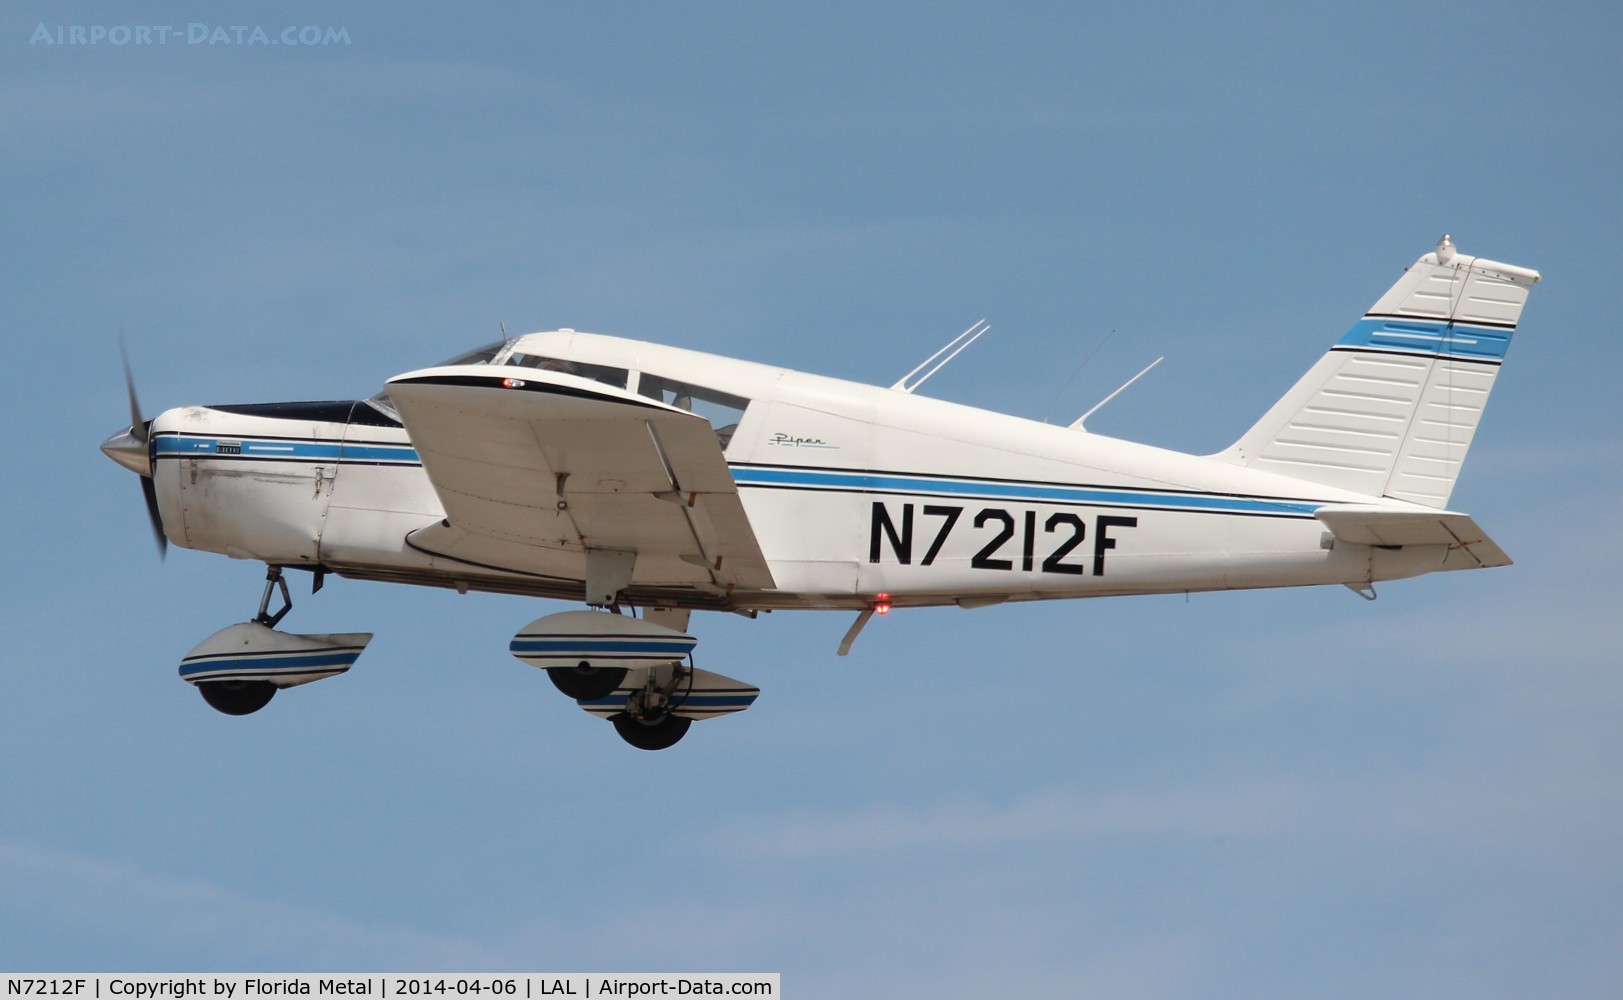 N7212F, 1968 Piper PA-28-140 C/N 28-25121, Piper PA-28-140